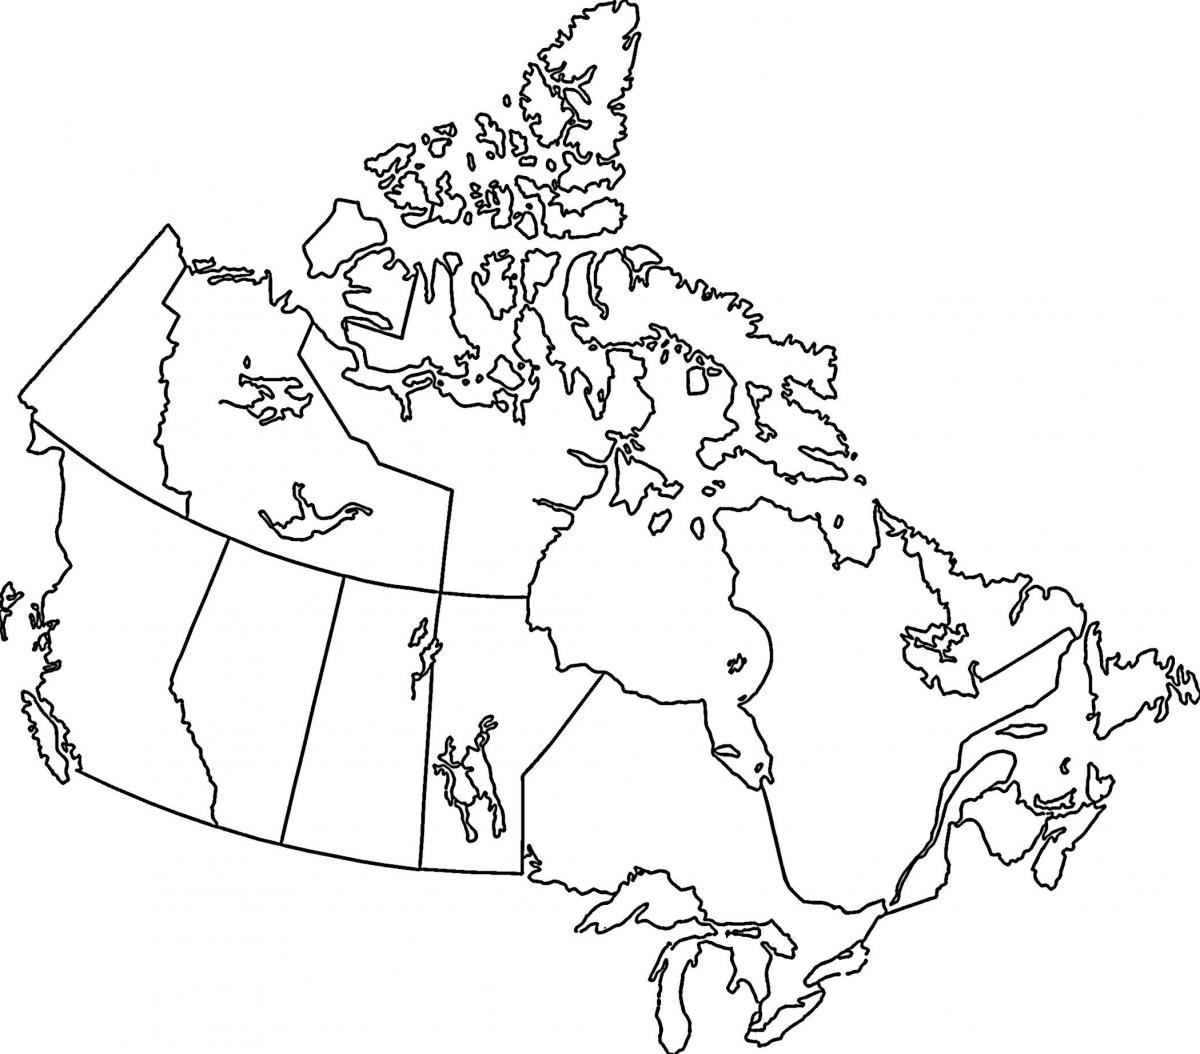 Lege kaart van Canada